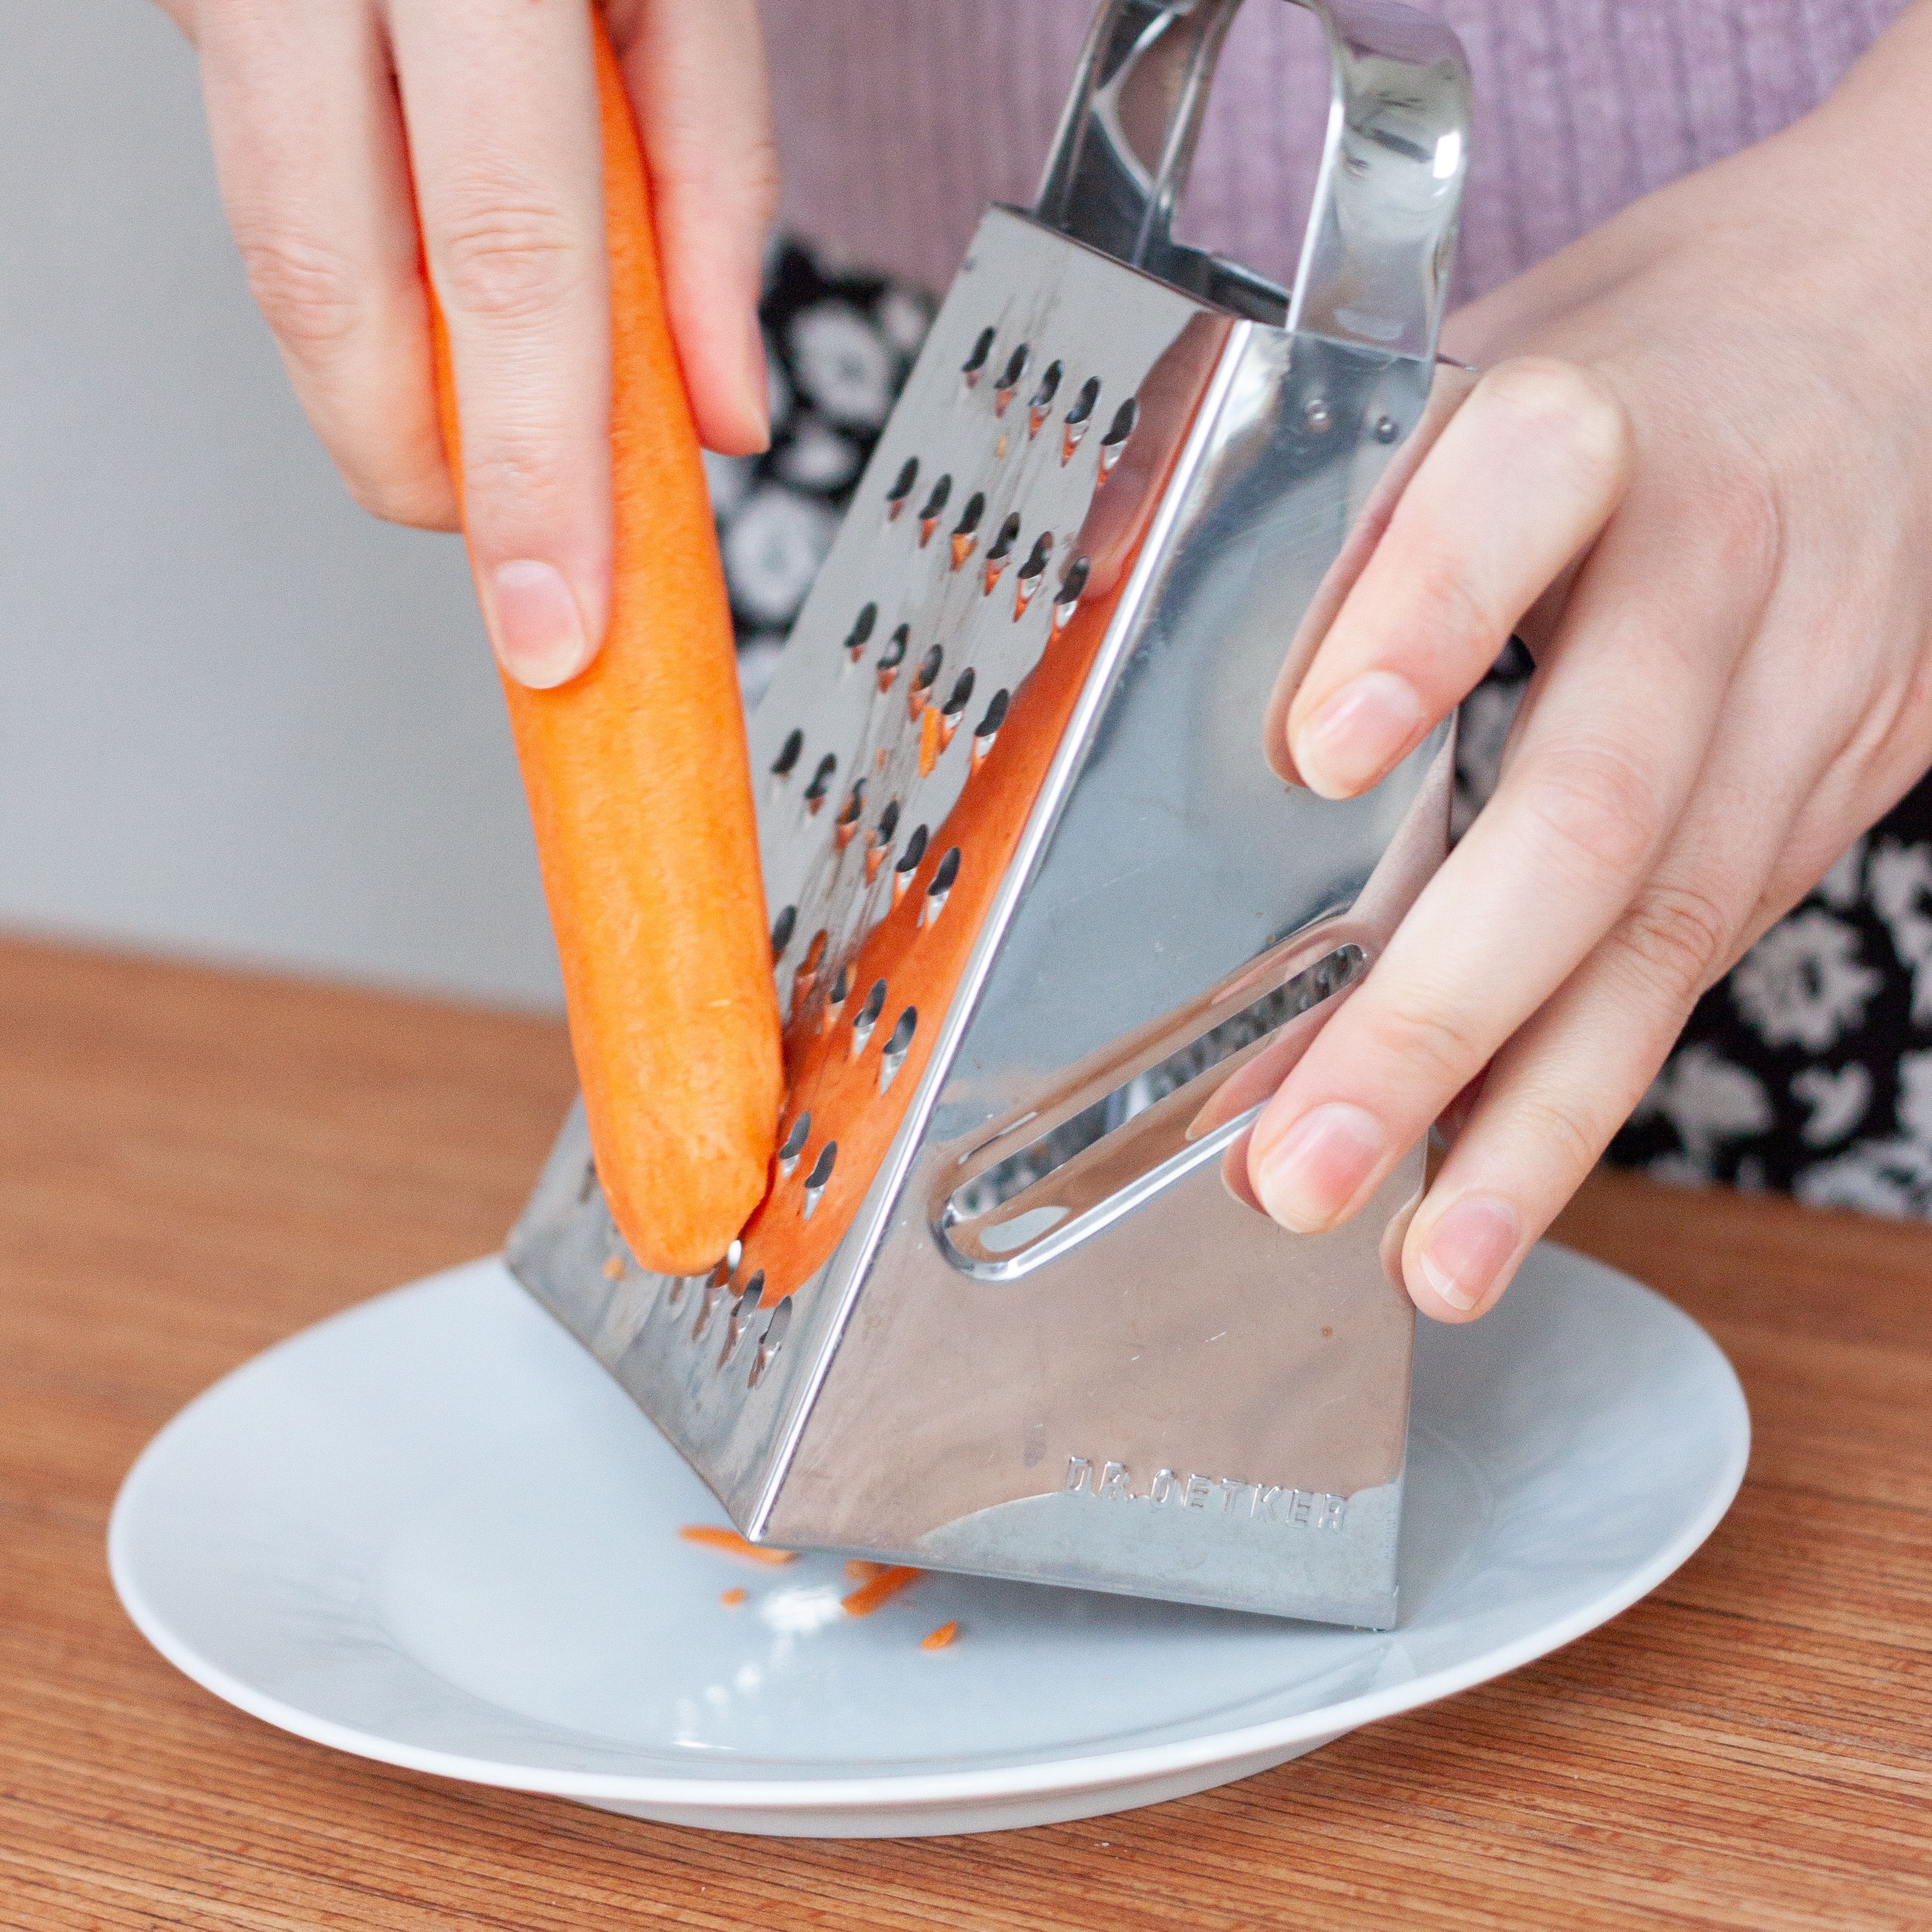 Karotte und Apfel waschen und schälen. Dann mit der Küchenreibe grob raspeln. In eine abdeckbare Schüssel geben.